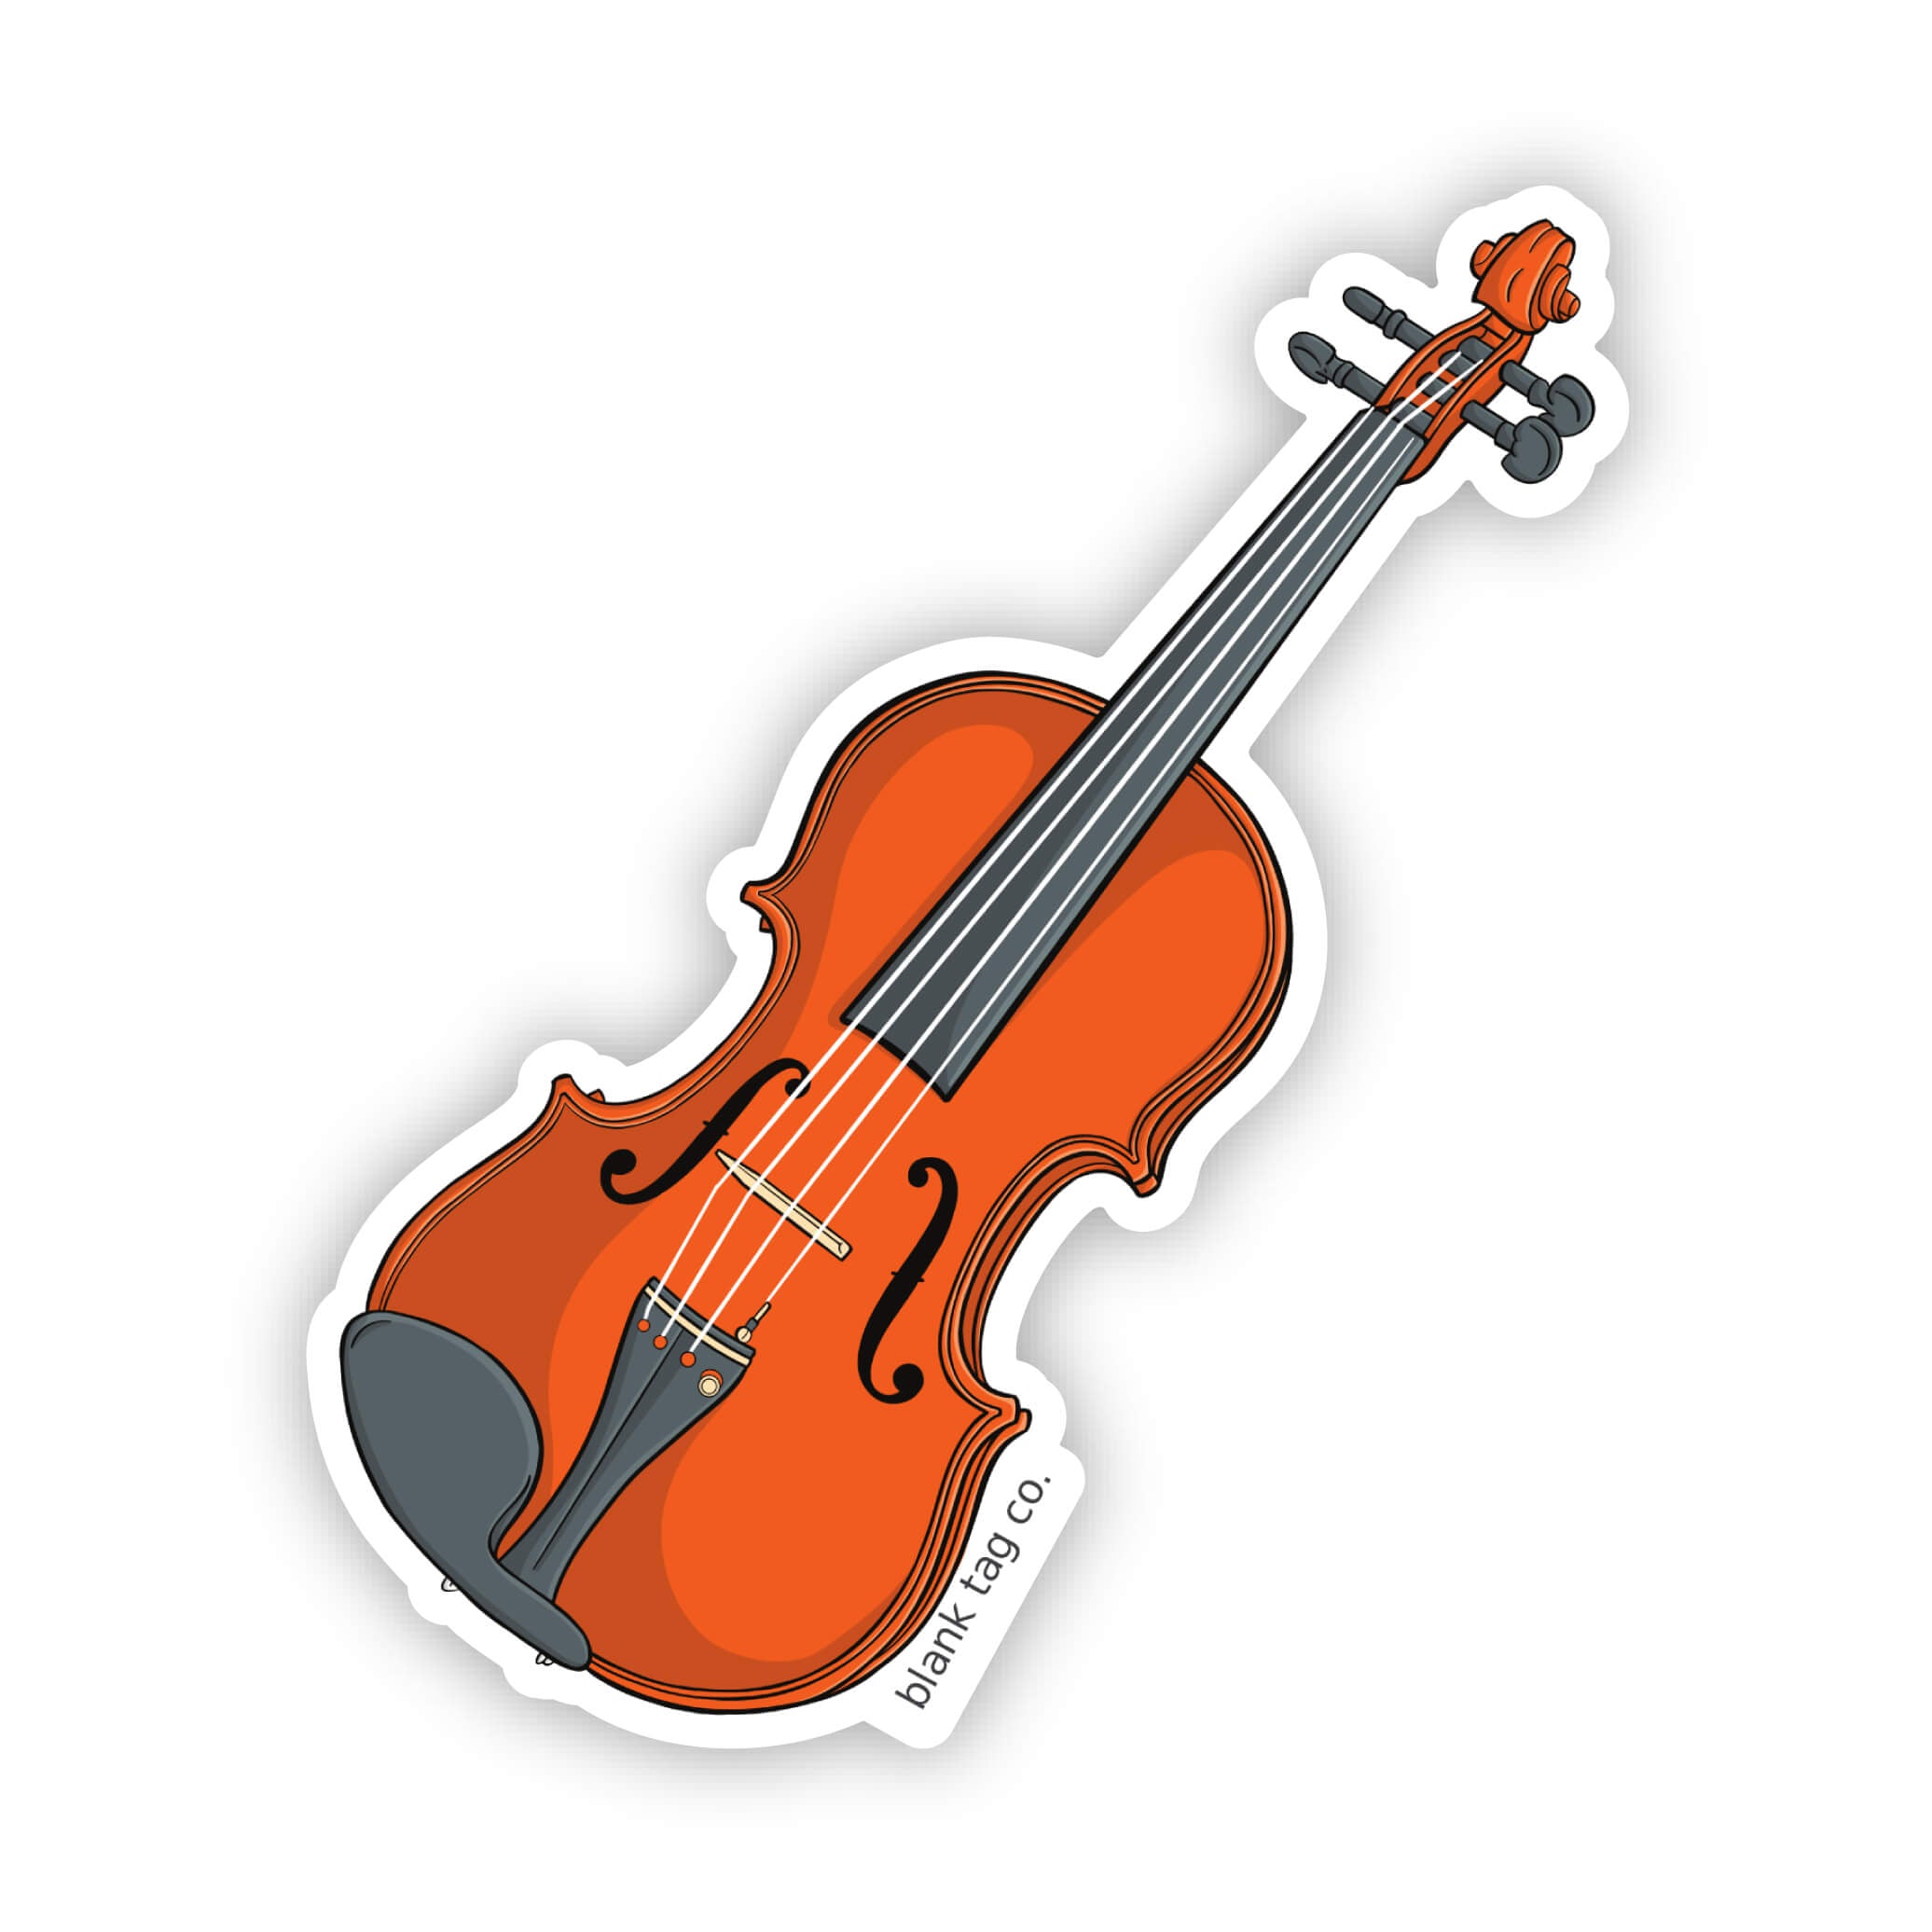 The Violin Sticker